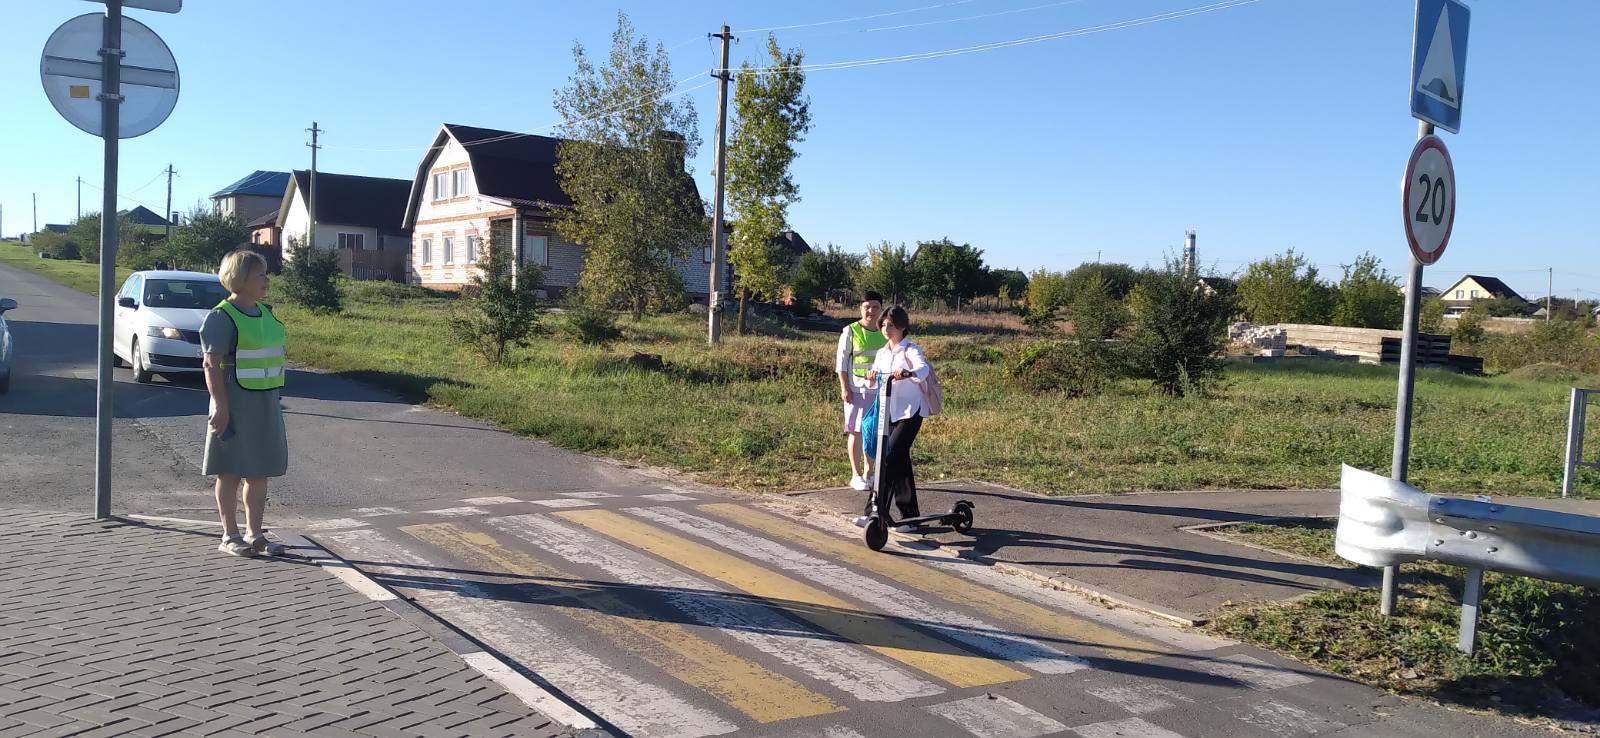 В Белгородском районе осуществляется дежурство на пешеходных переходах вблизи школ